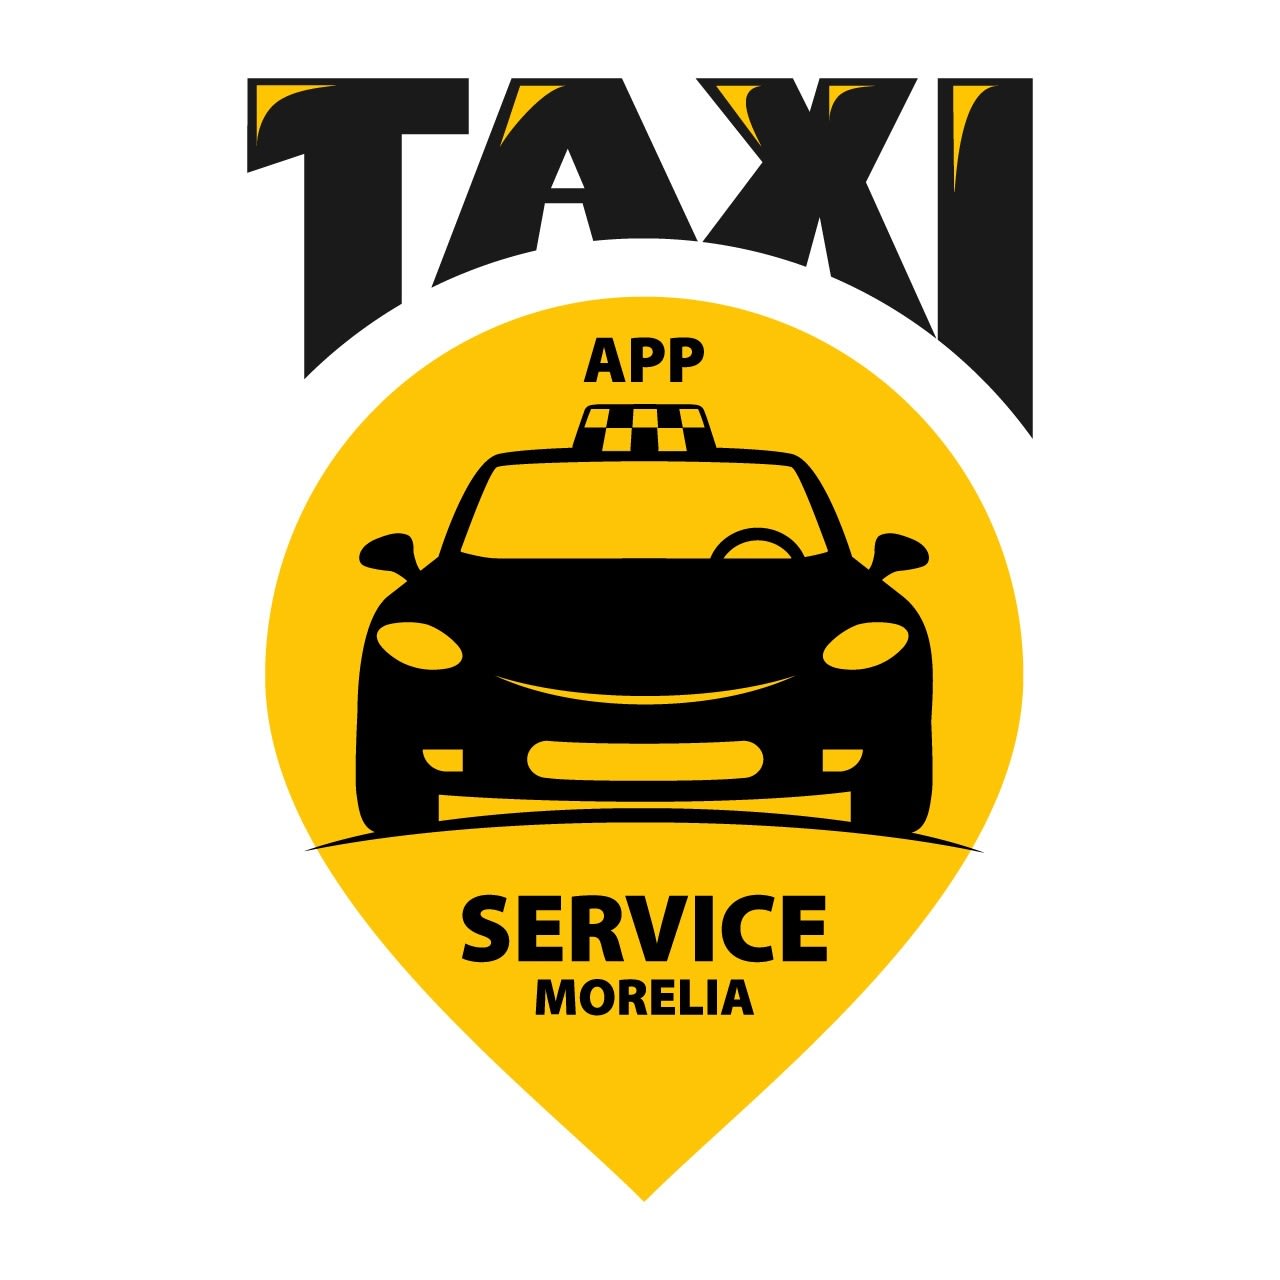 Taxi App Service Morelia